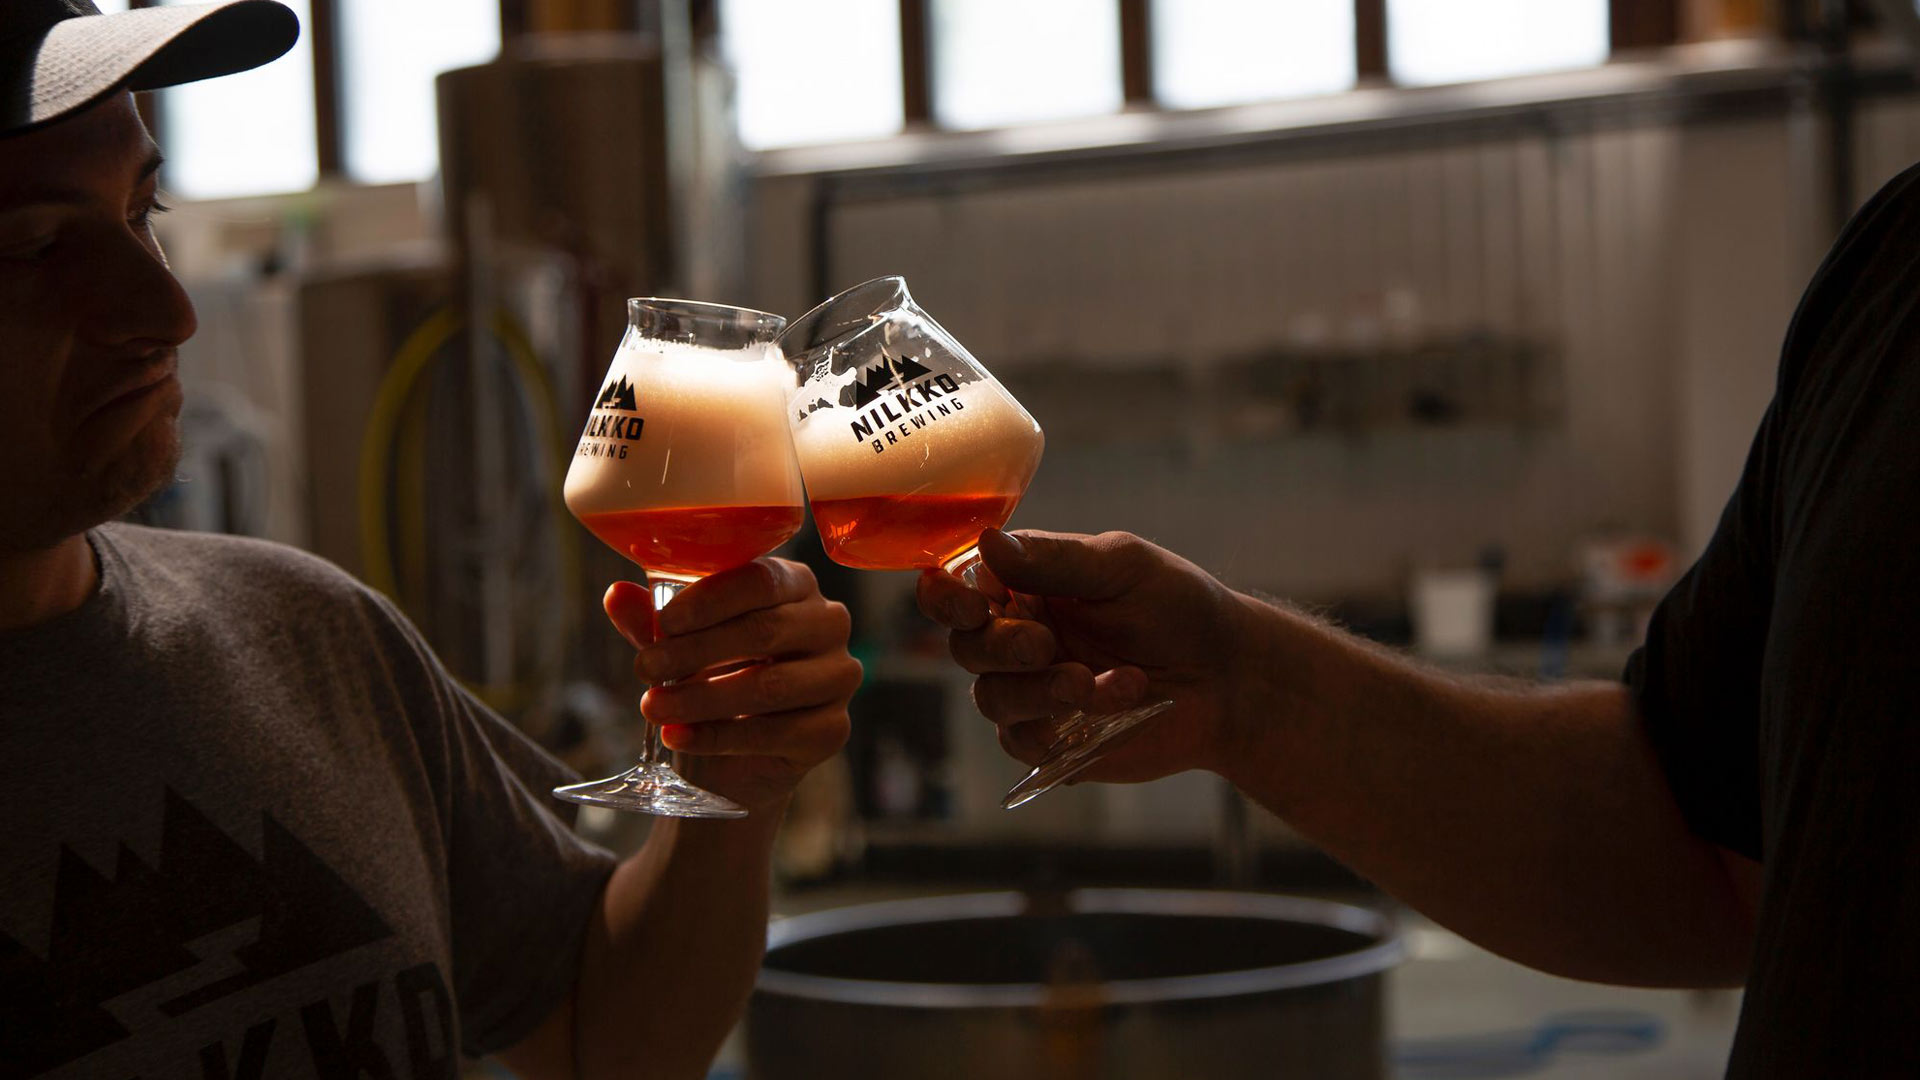 Paikallisen käsityöläispanimo Nilkko Brewingin oluita voi maistaa panimon omassa baarissa.